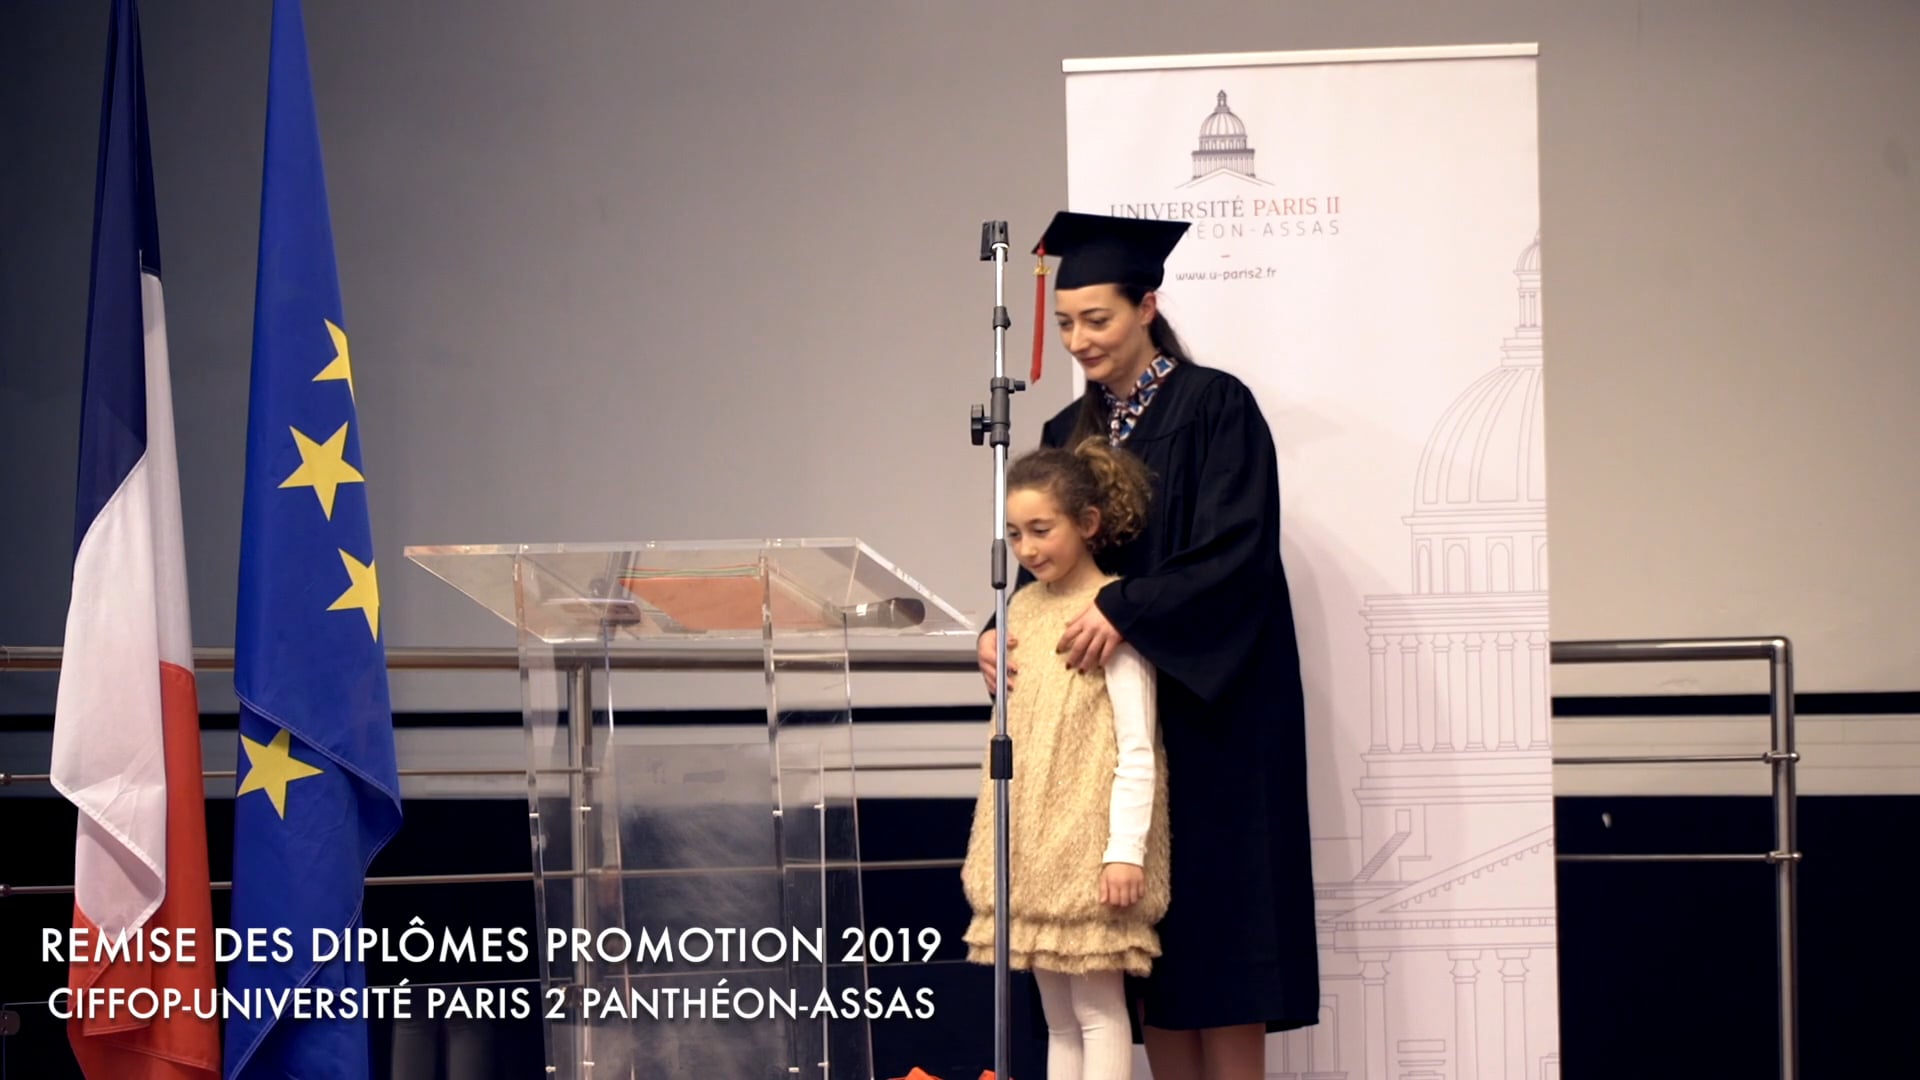 Remise des diplômes Promotion 2019 - CIFFOP-UNIVERSITÉ Paris 2 PANTHÉON-ASSAS